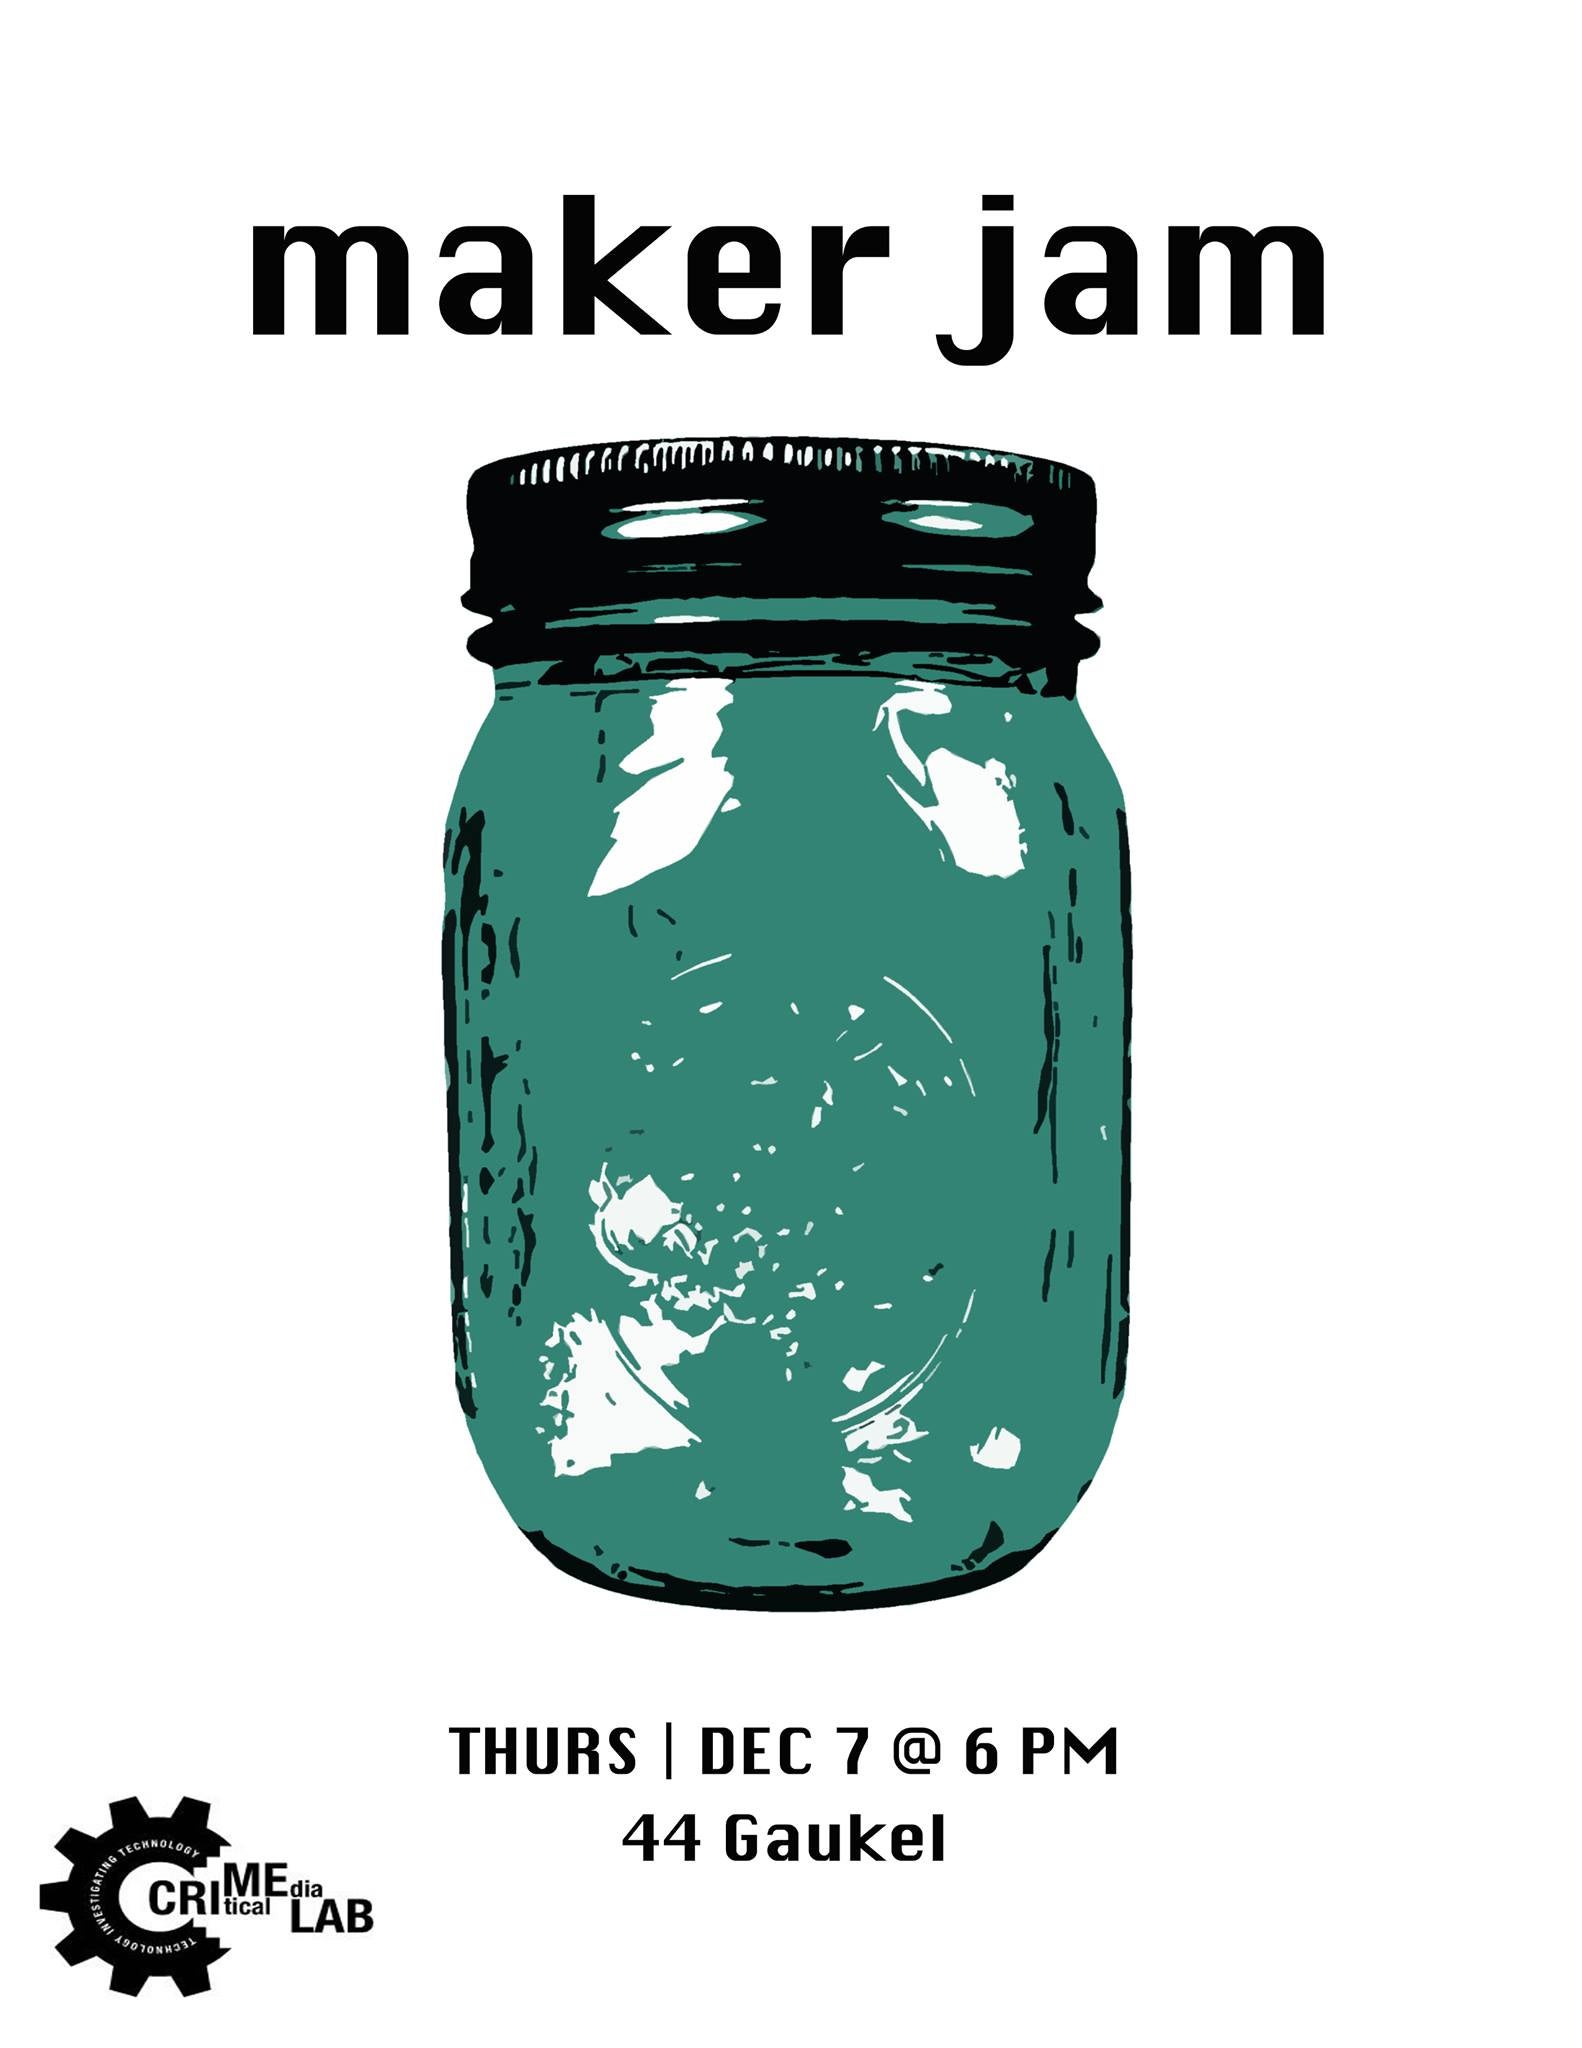 Maker jam poster